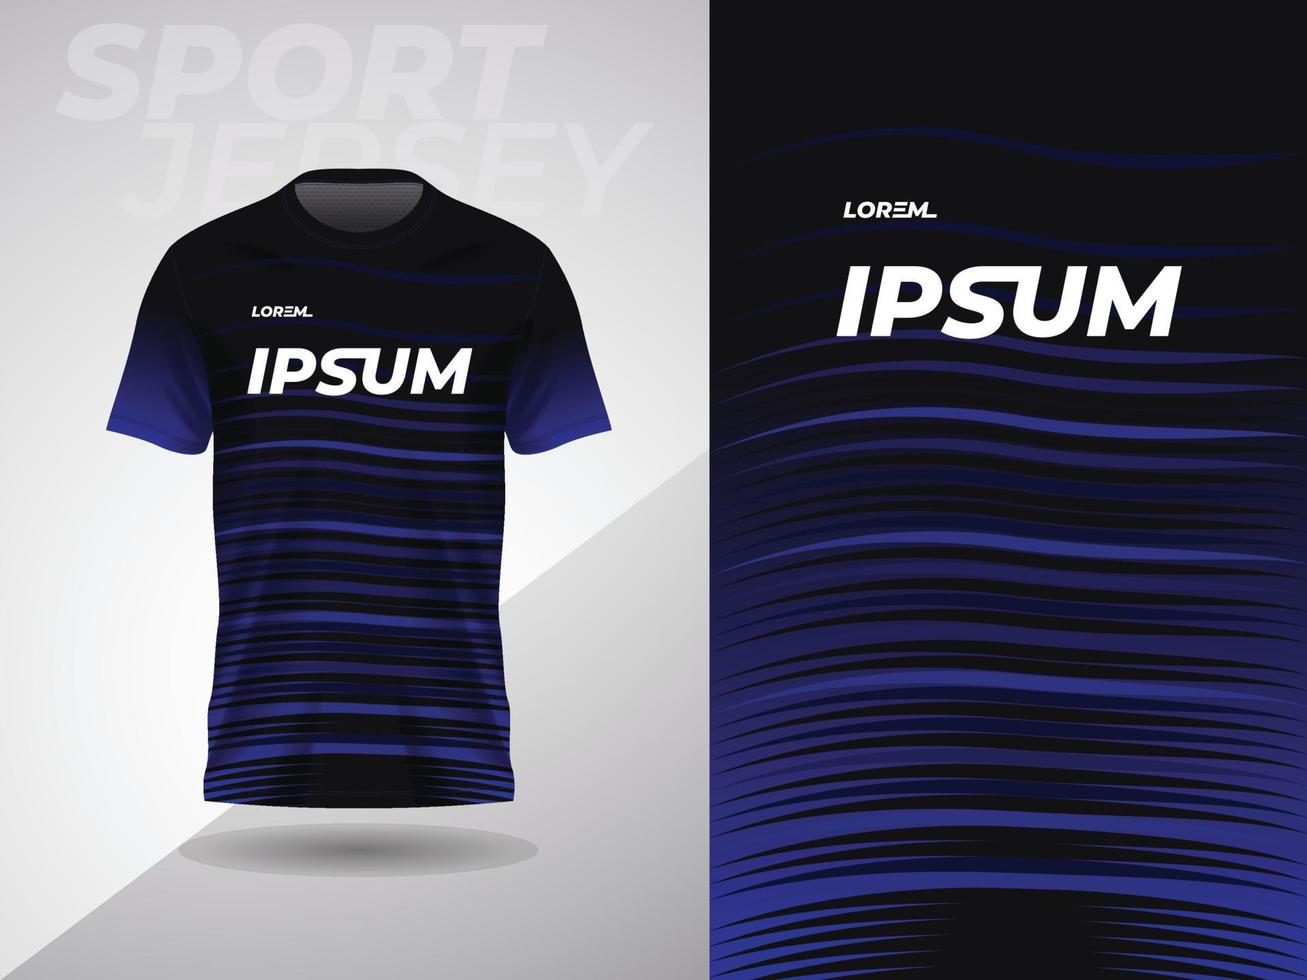 blå svart abstrakt tshirt sporter jersey design för fotboll fotboll tävlings gaming cross cykling löpning vektor